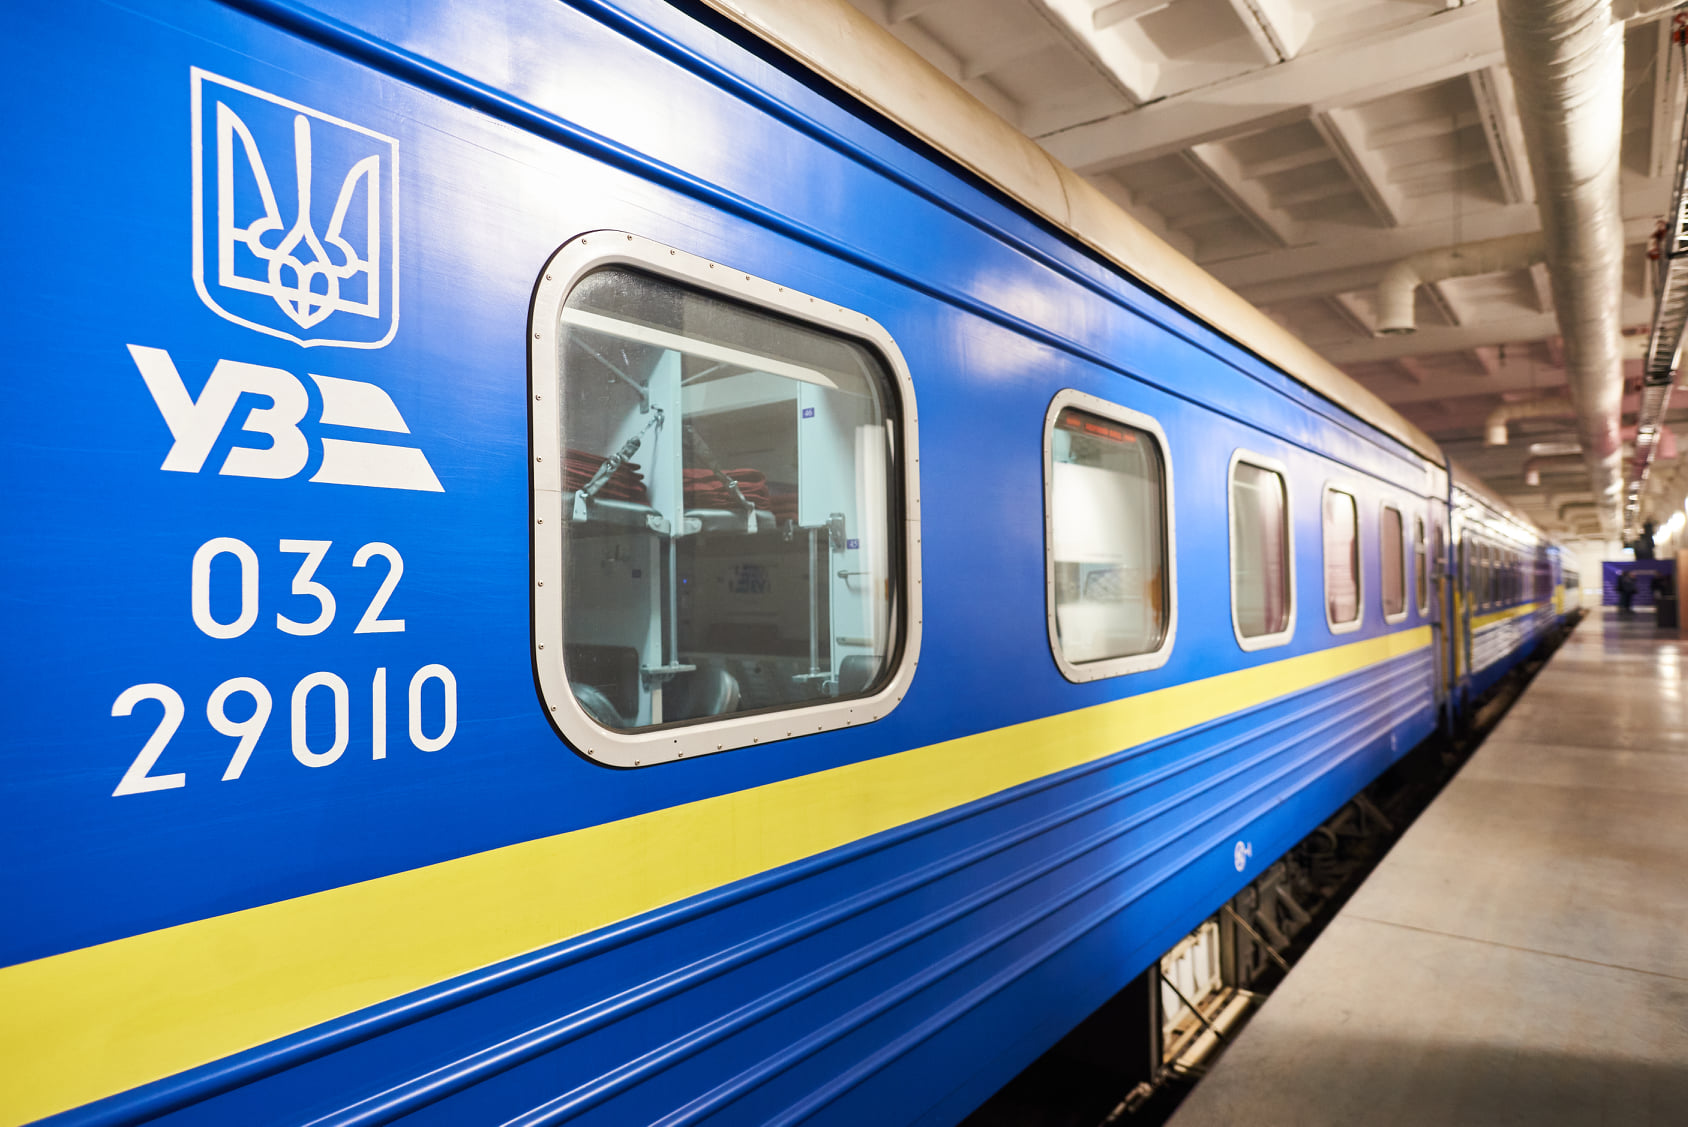 Укрзалізниця завершила тестирование Starlink в поездах: до конца года спутниковый интернет появится во всех скоростных поездах Интерсити